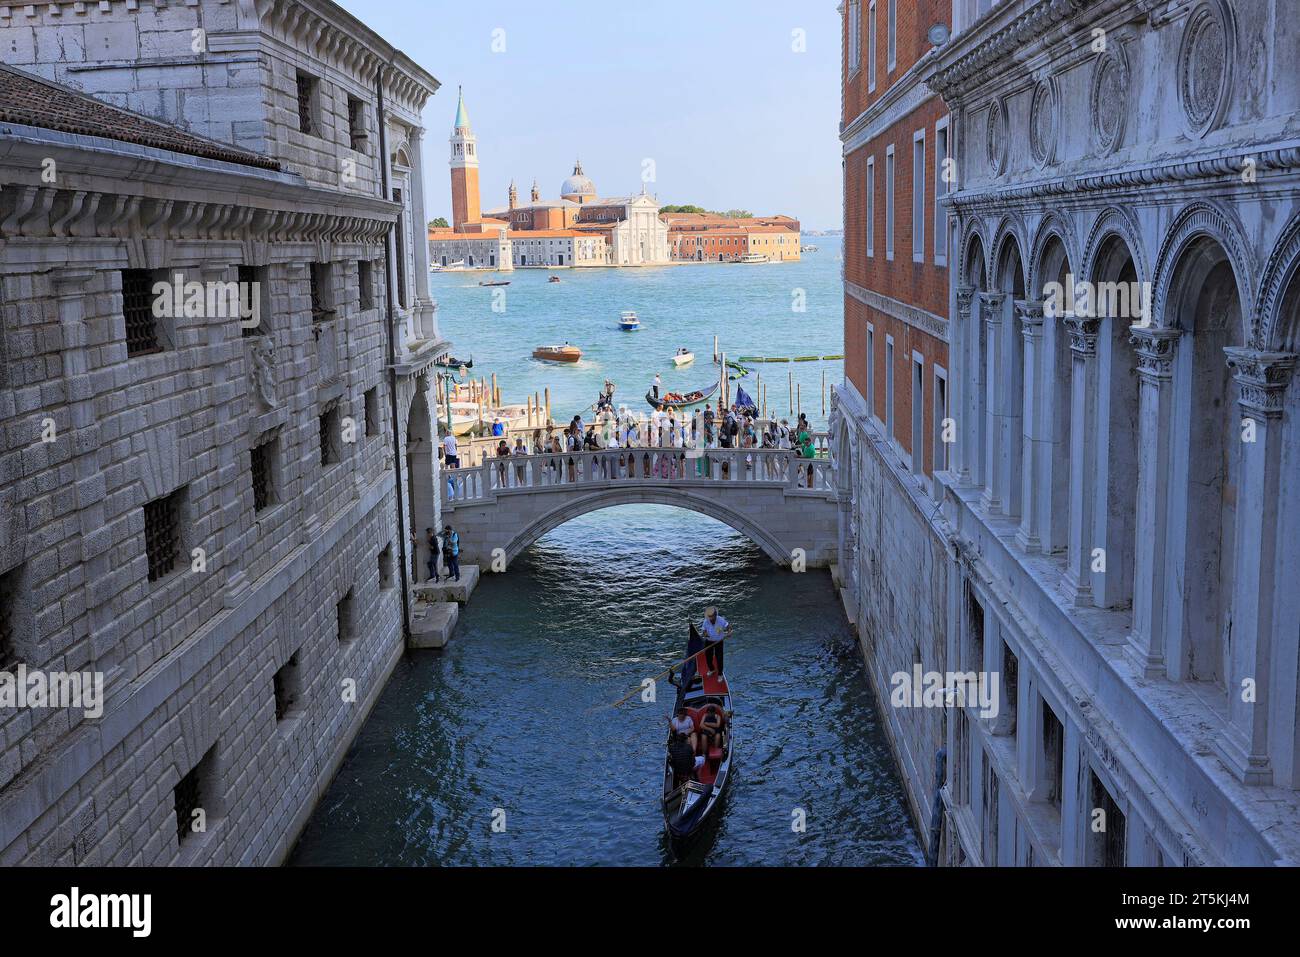 Tourists enjoying gondola ride and standing on the bridge, Dodge’s Palace area, Italy Stock Photo